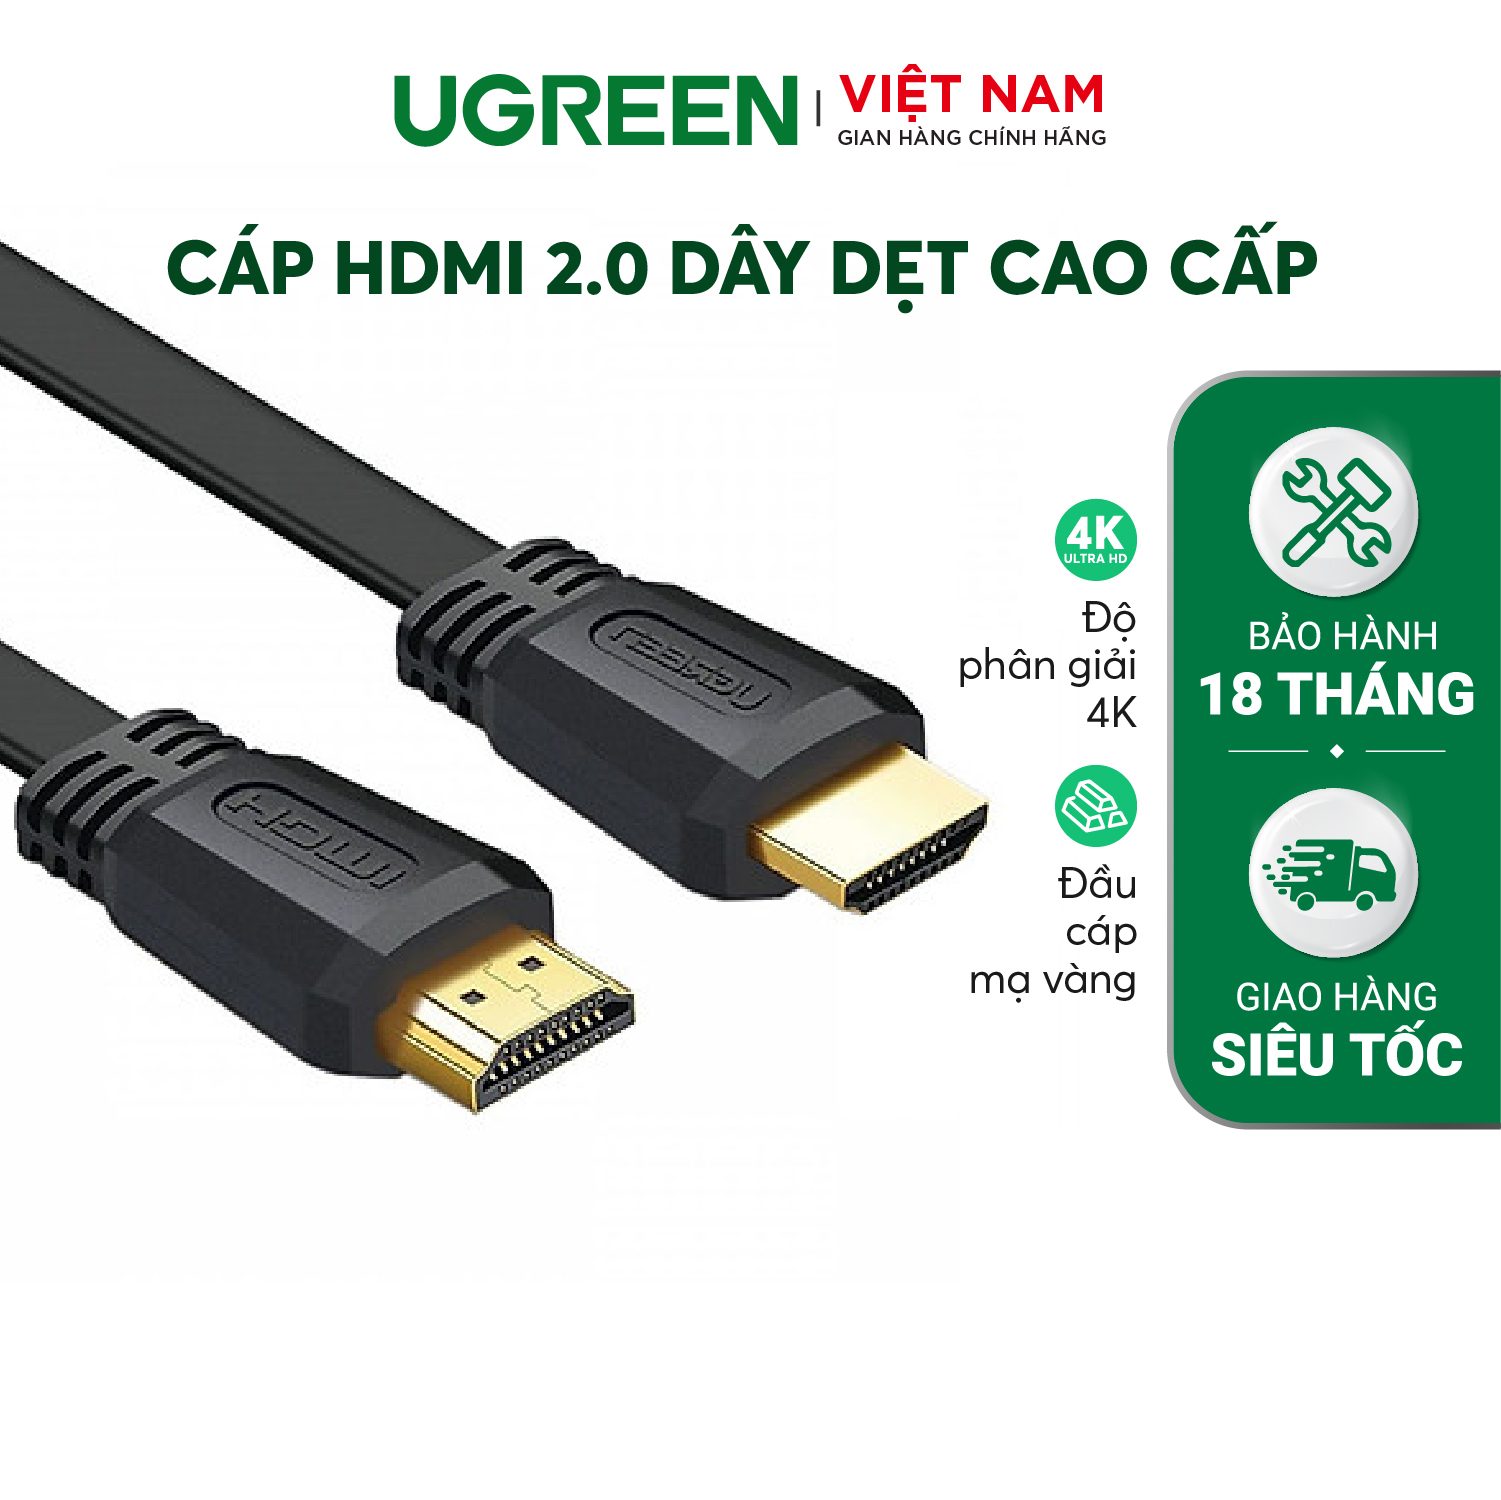 Ugreen 50819 HDMI 2.0 FLAT CABLE ED015 - Hàng Chính Hãng